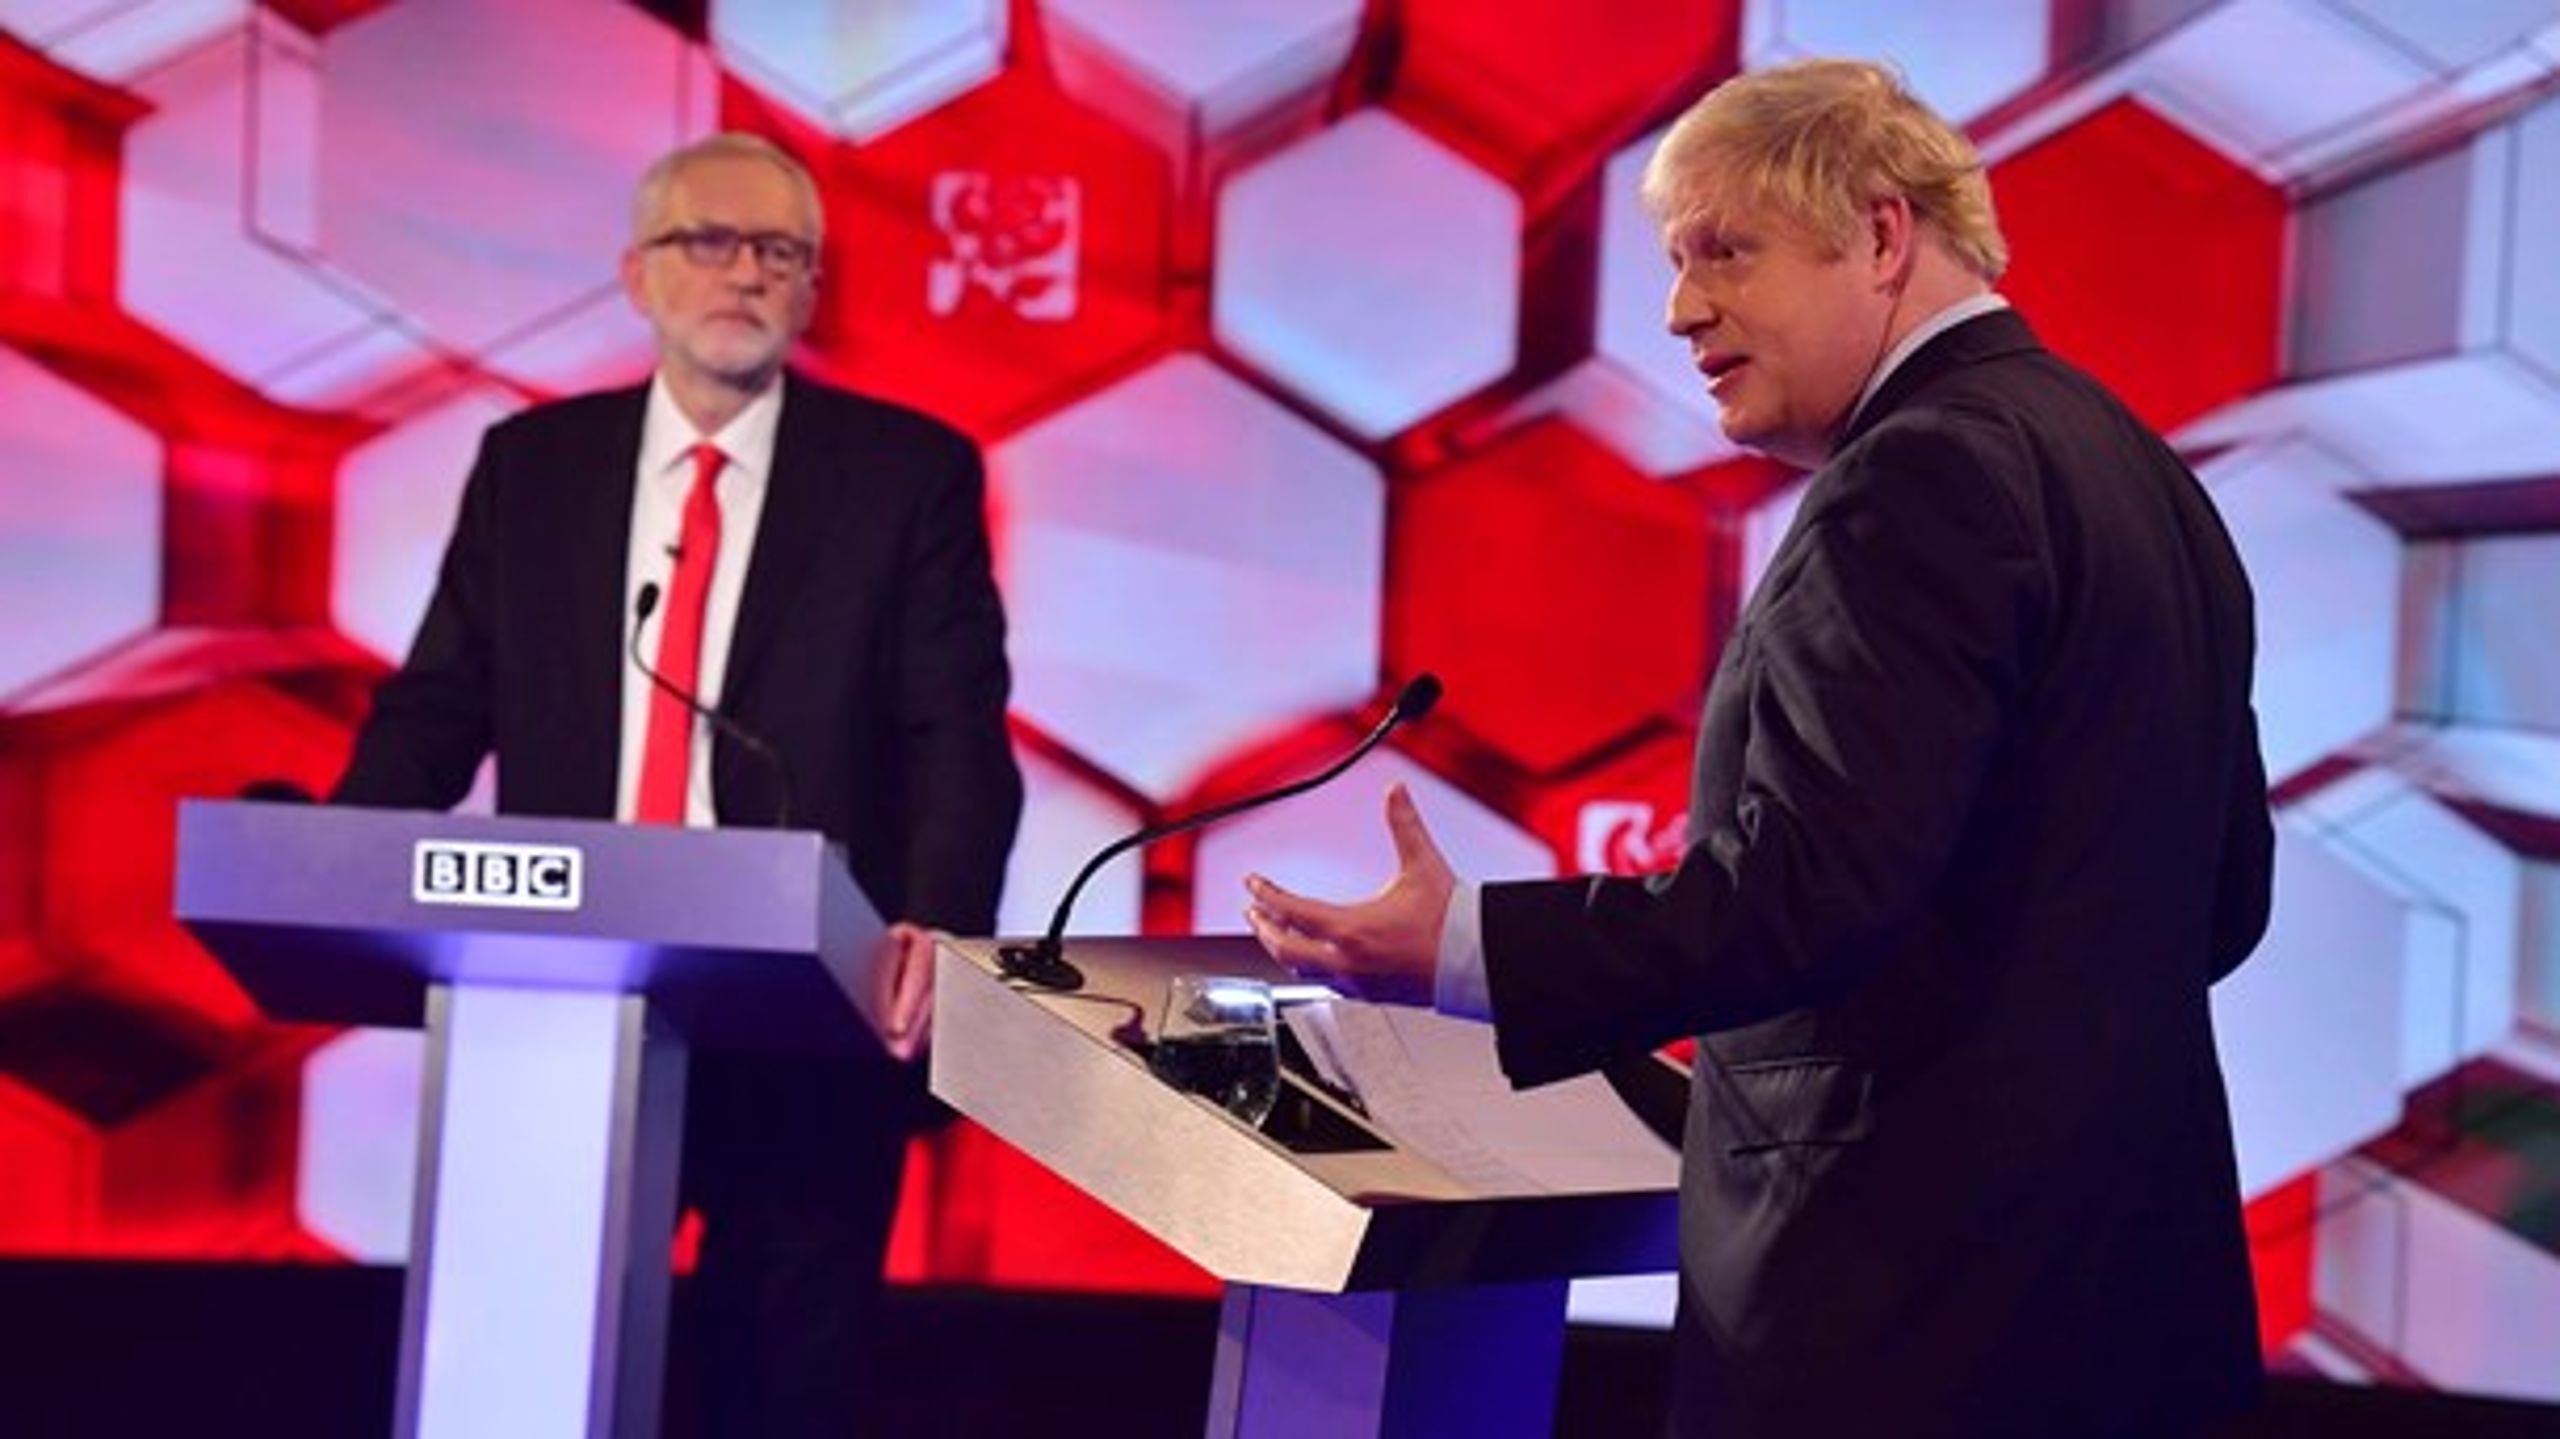 Fredag mødtes de to spidskandidater til en debat på BBC. Den endte ifølge seerne 52-48 til Johnson.